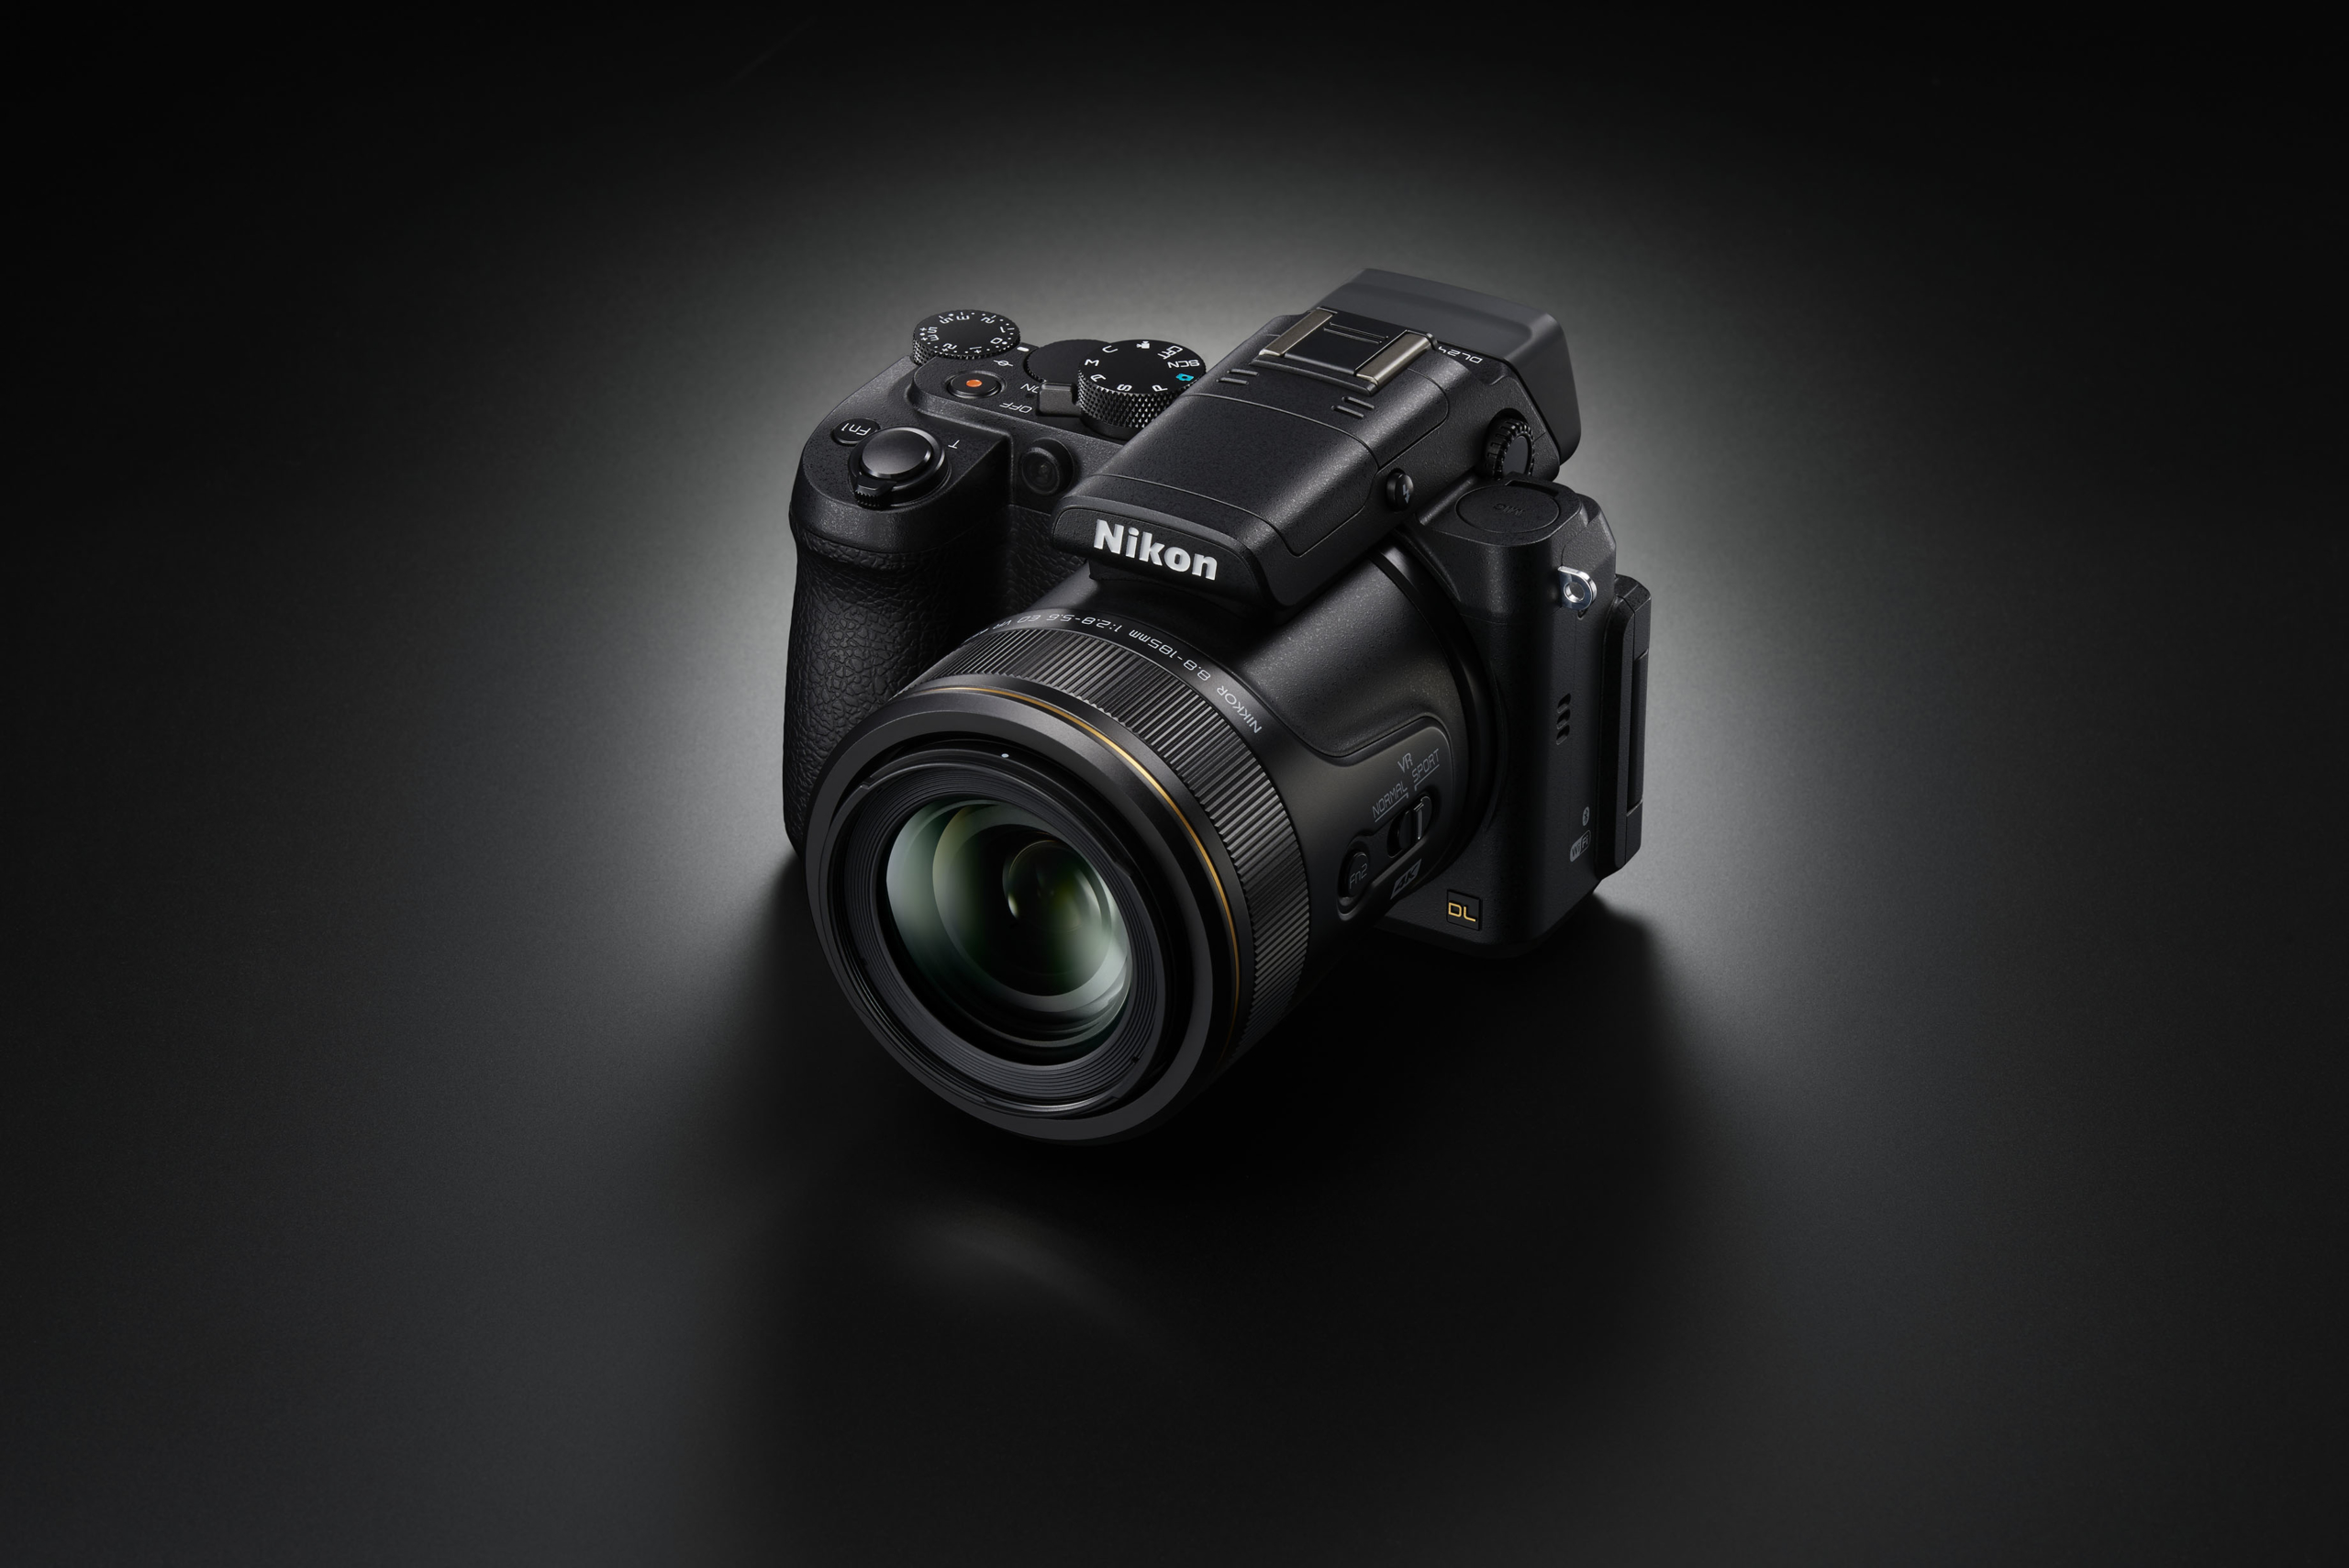 سبيتاني الوكيل الحصري   نيكون تعلن عن طرح سلسلة كاميرات جديدة من نيكون تدعى DL تتميز بصغرالحجم والأداء القياسي الاحترافي